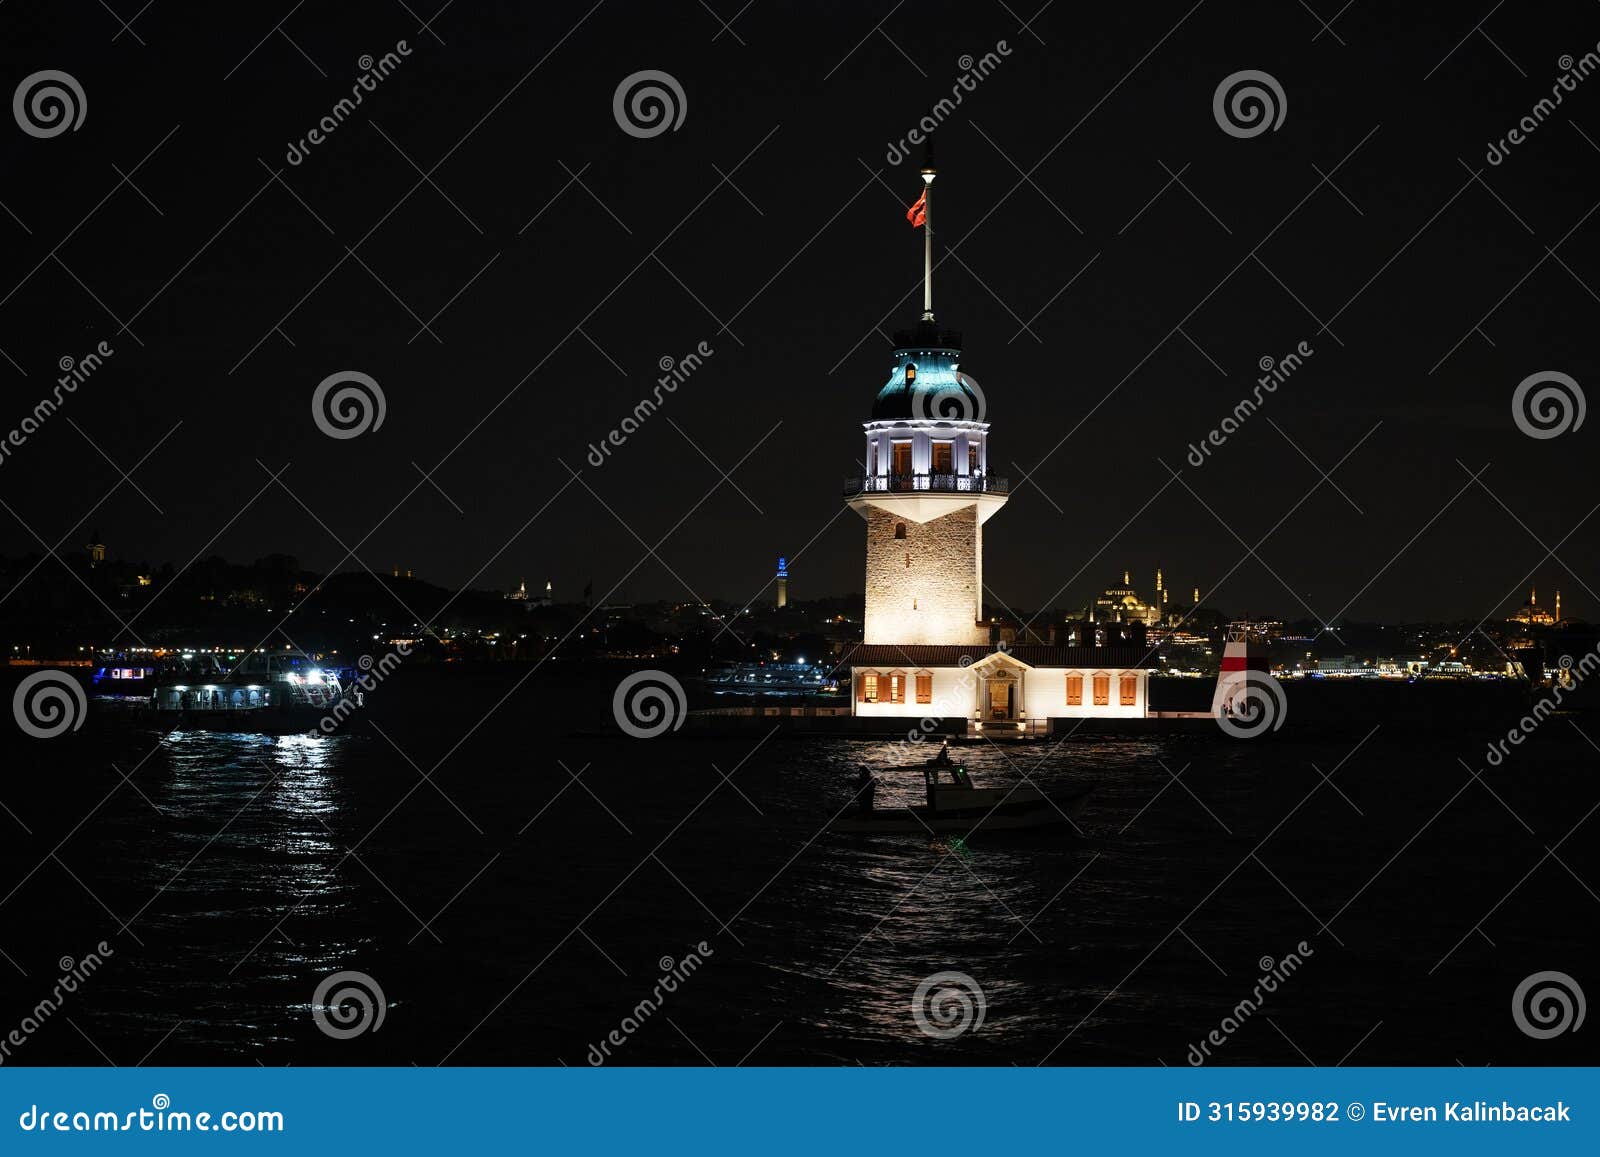 maidens tower in istanbul, turkiye